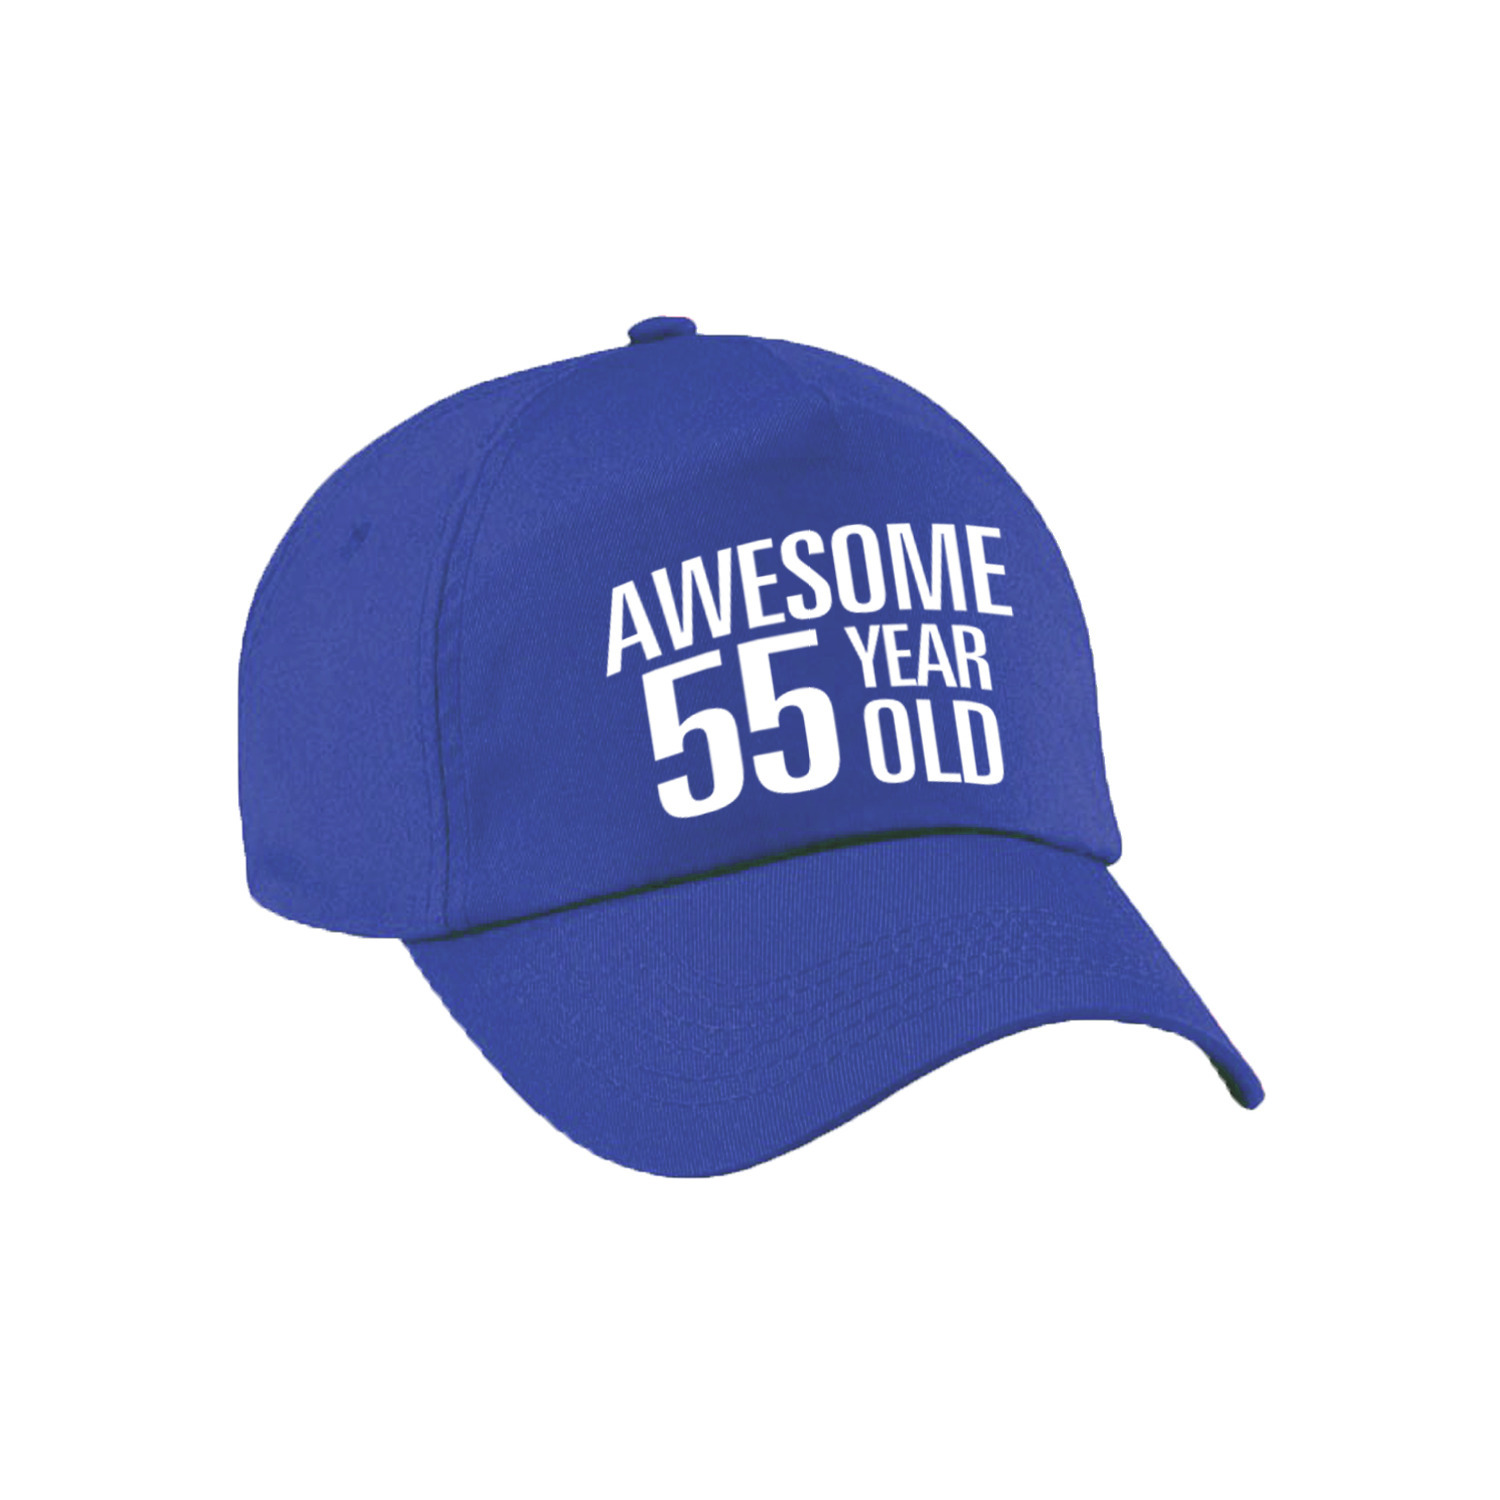 Awesome 55 year old verjaardag pet - cap blauw voor dames en heren